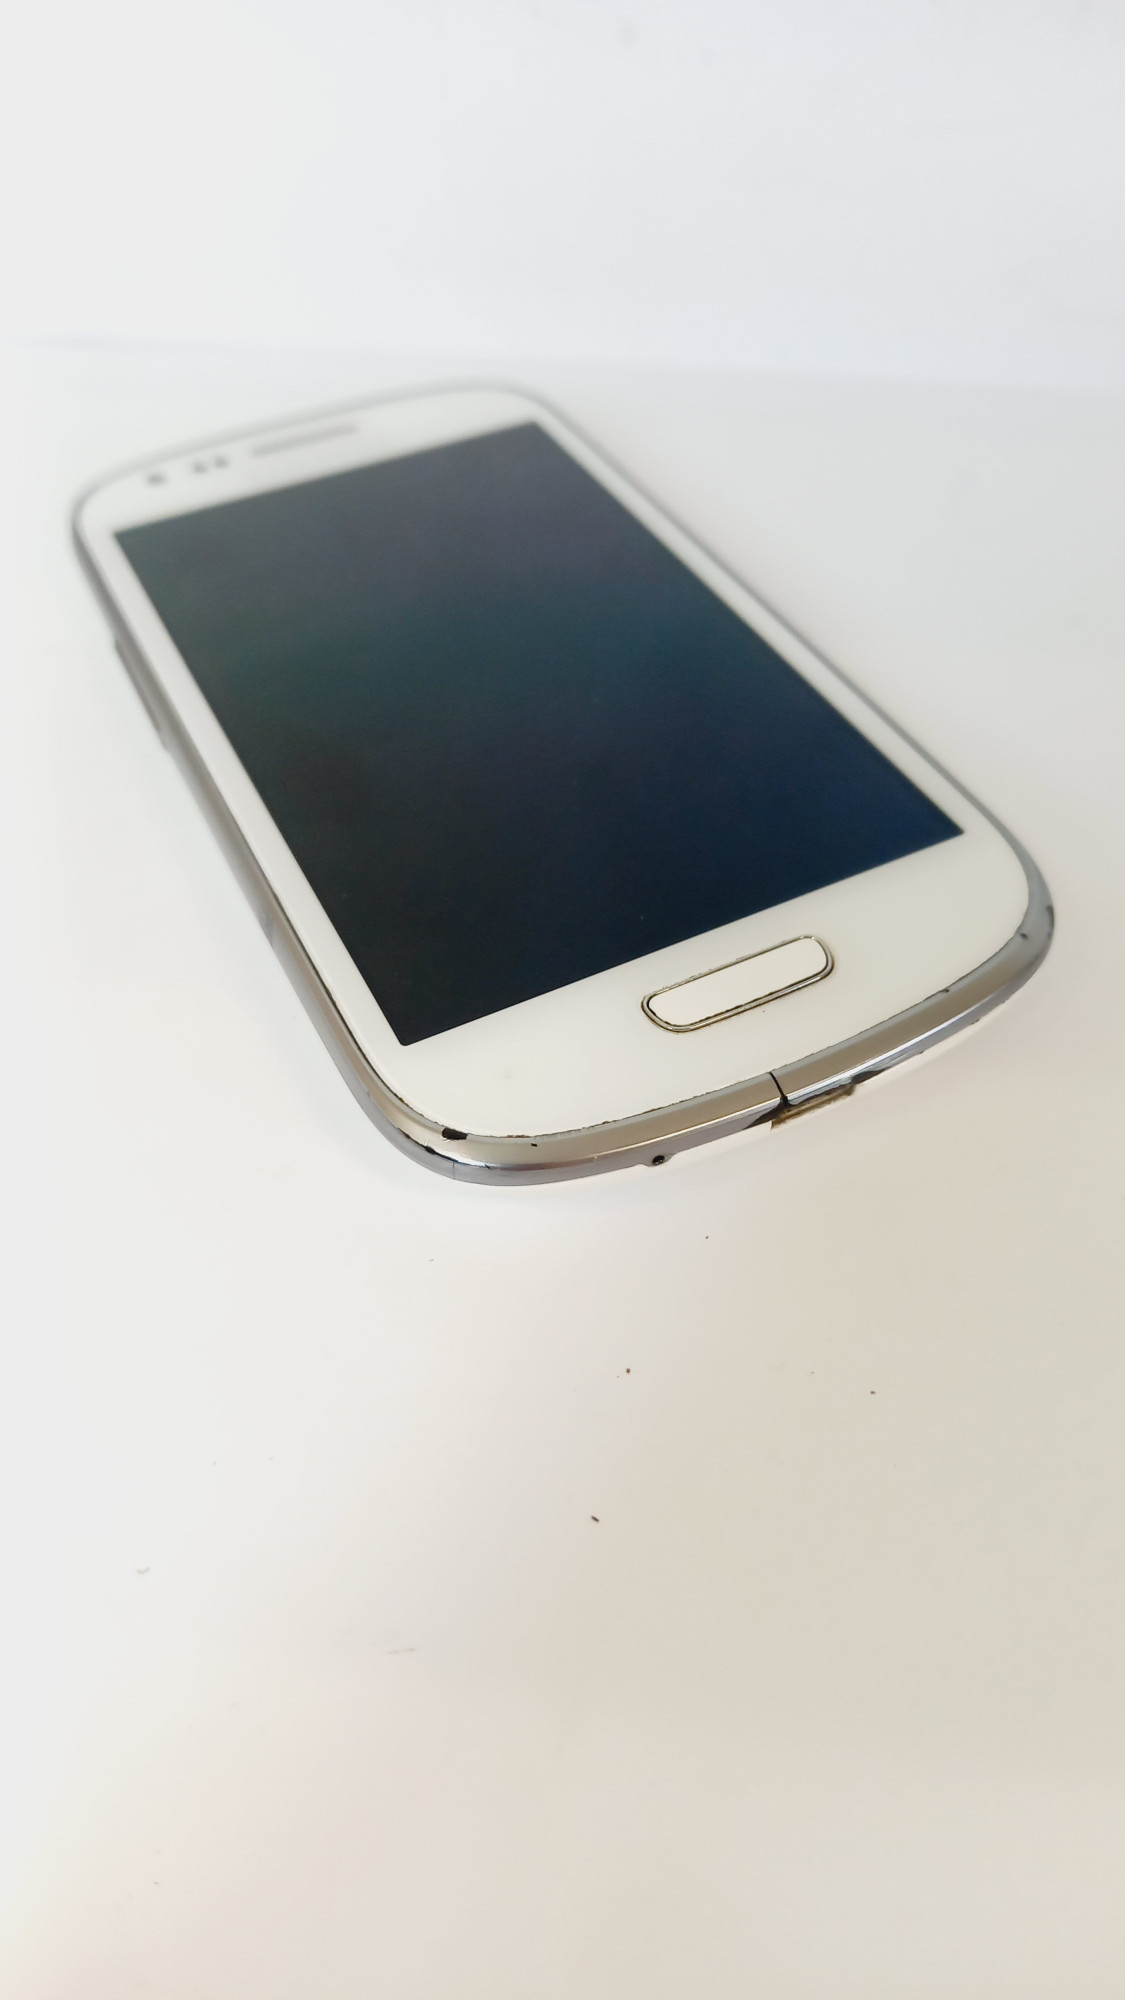 Samsung Galaxy S III mini (GT-I8190) 1/16Gb 5